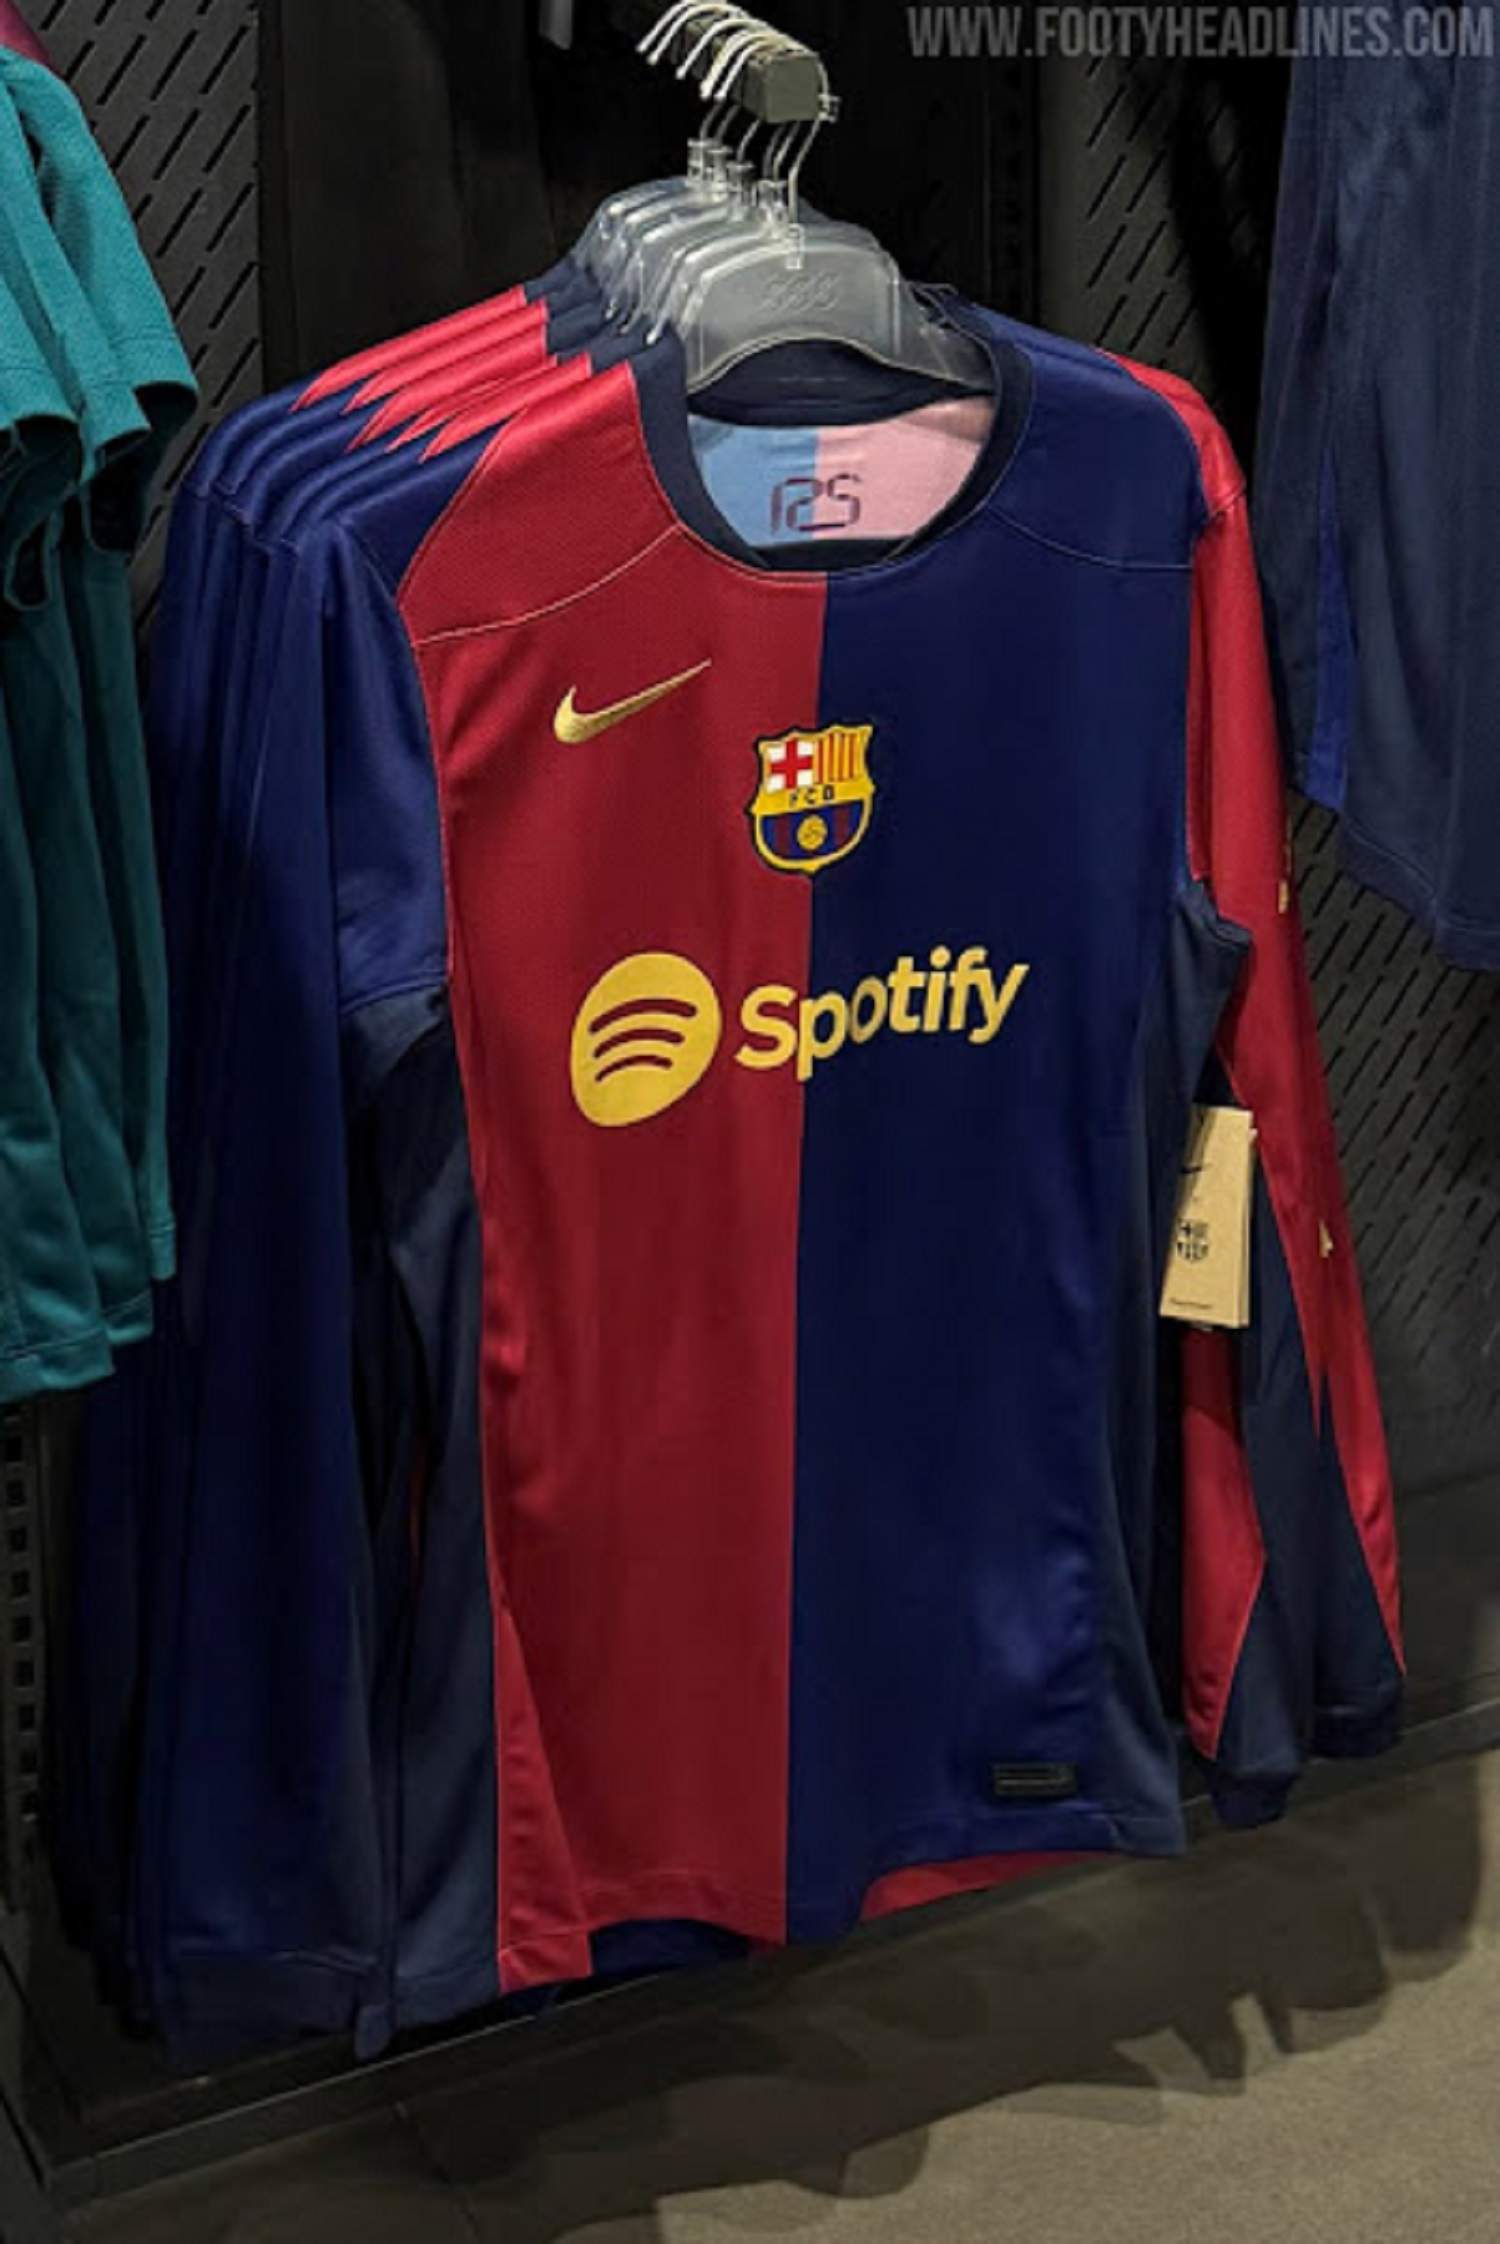 La nova samarreta del Barça ja està disponible en diferents països